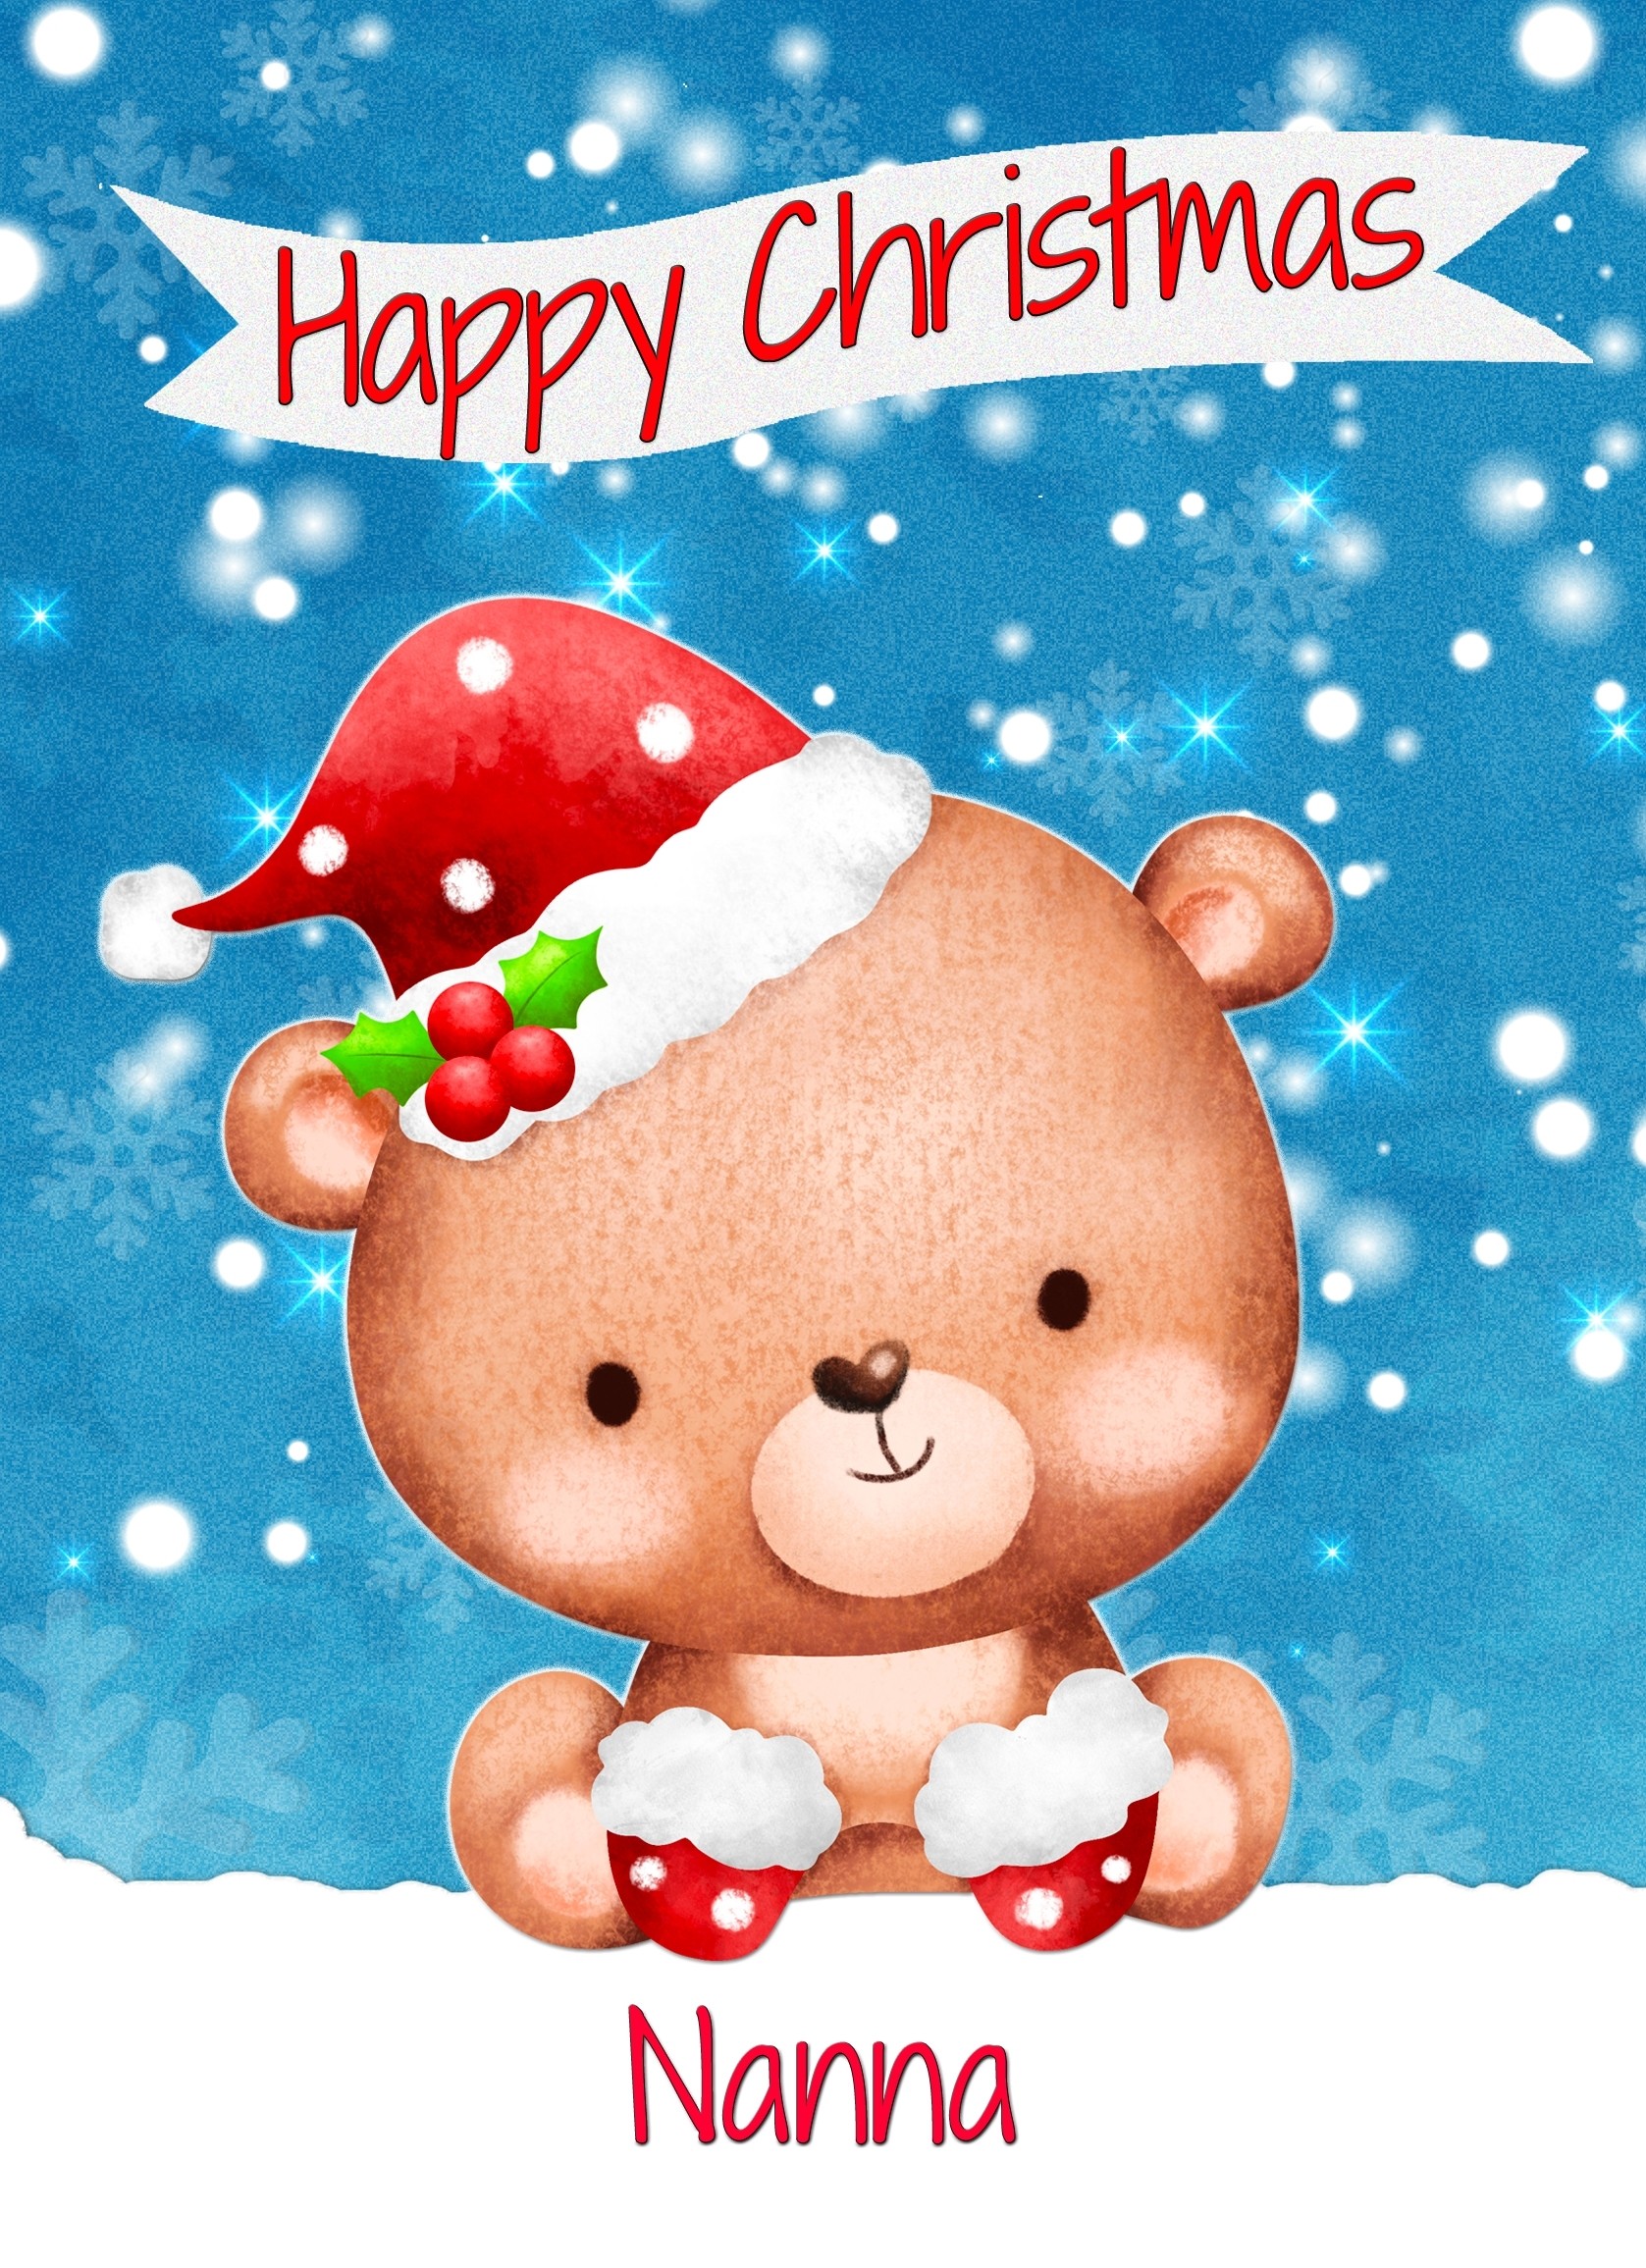 Christmas Card For Nanna (Happy Christmas, Bear)